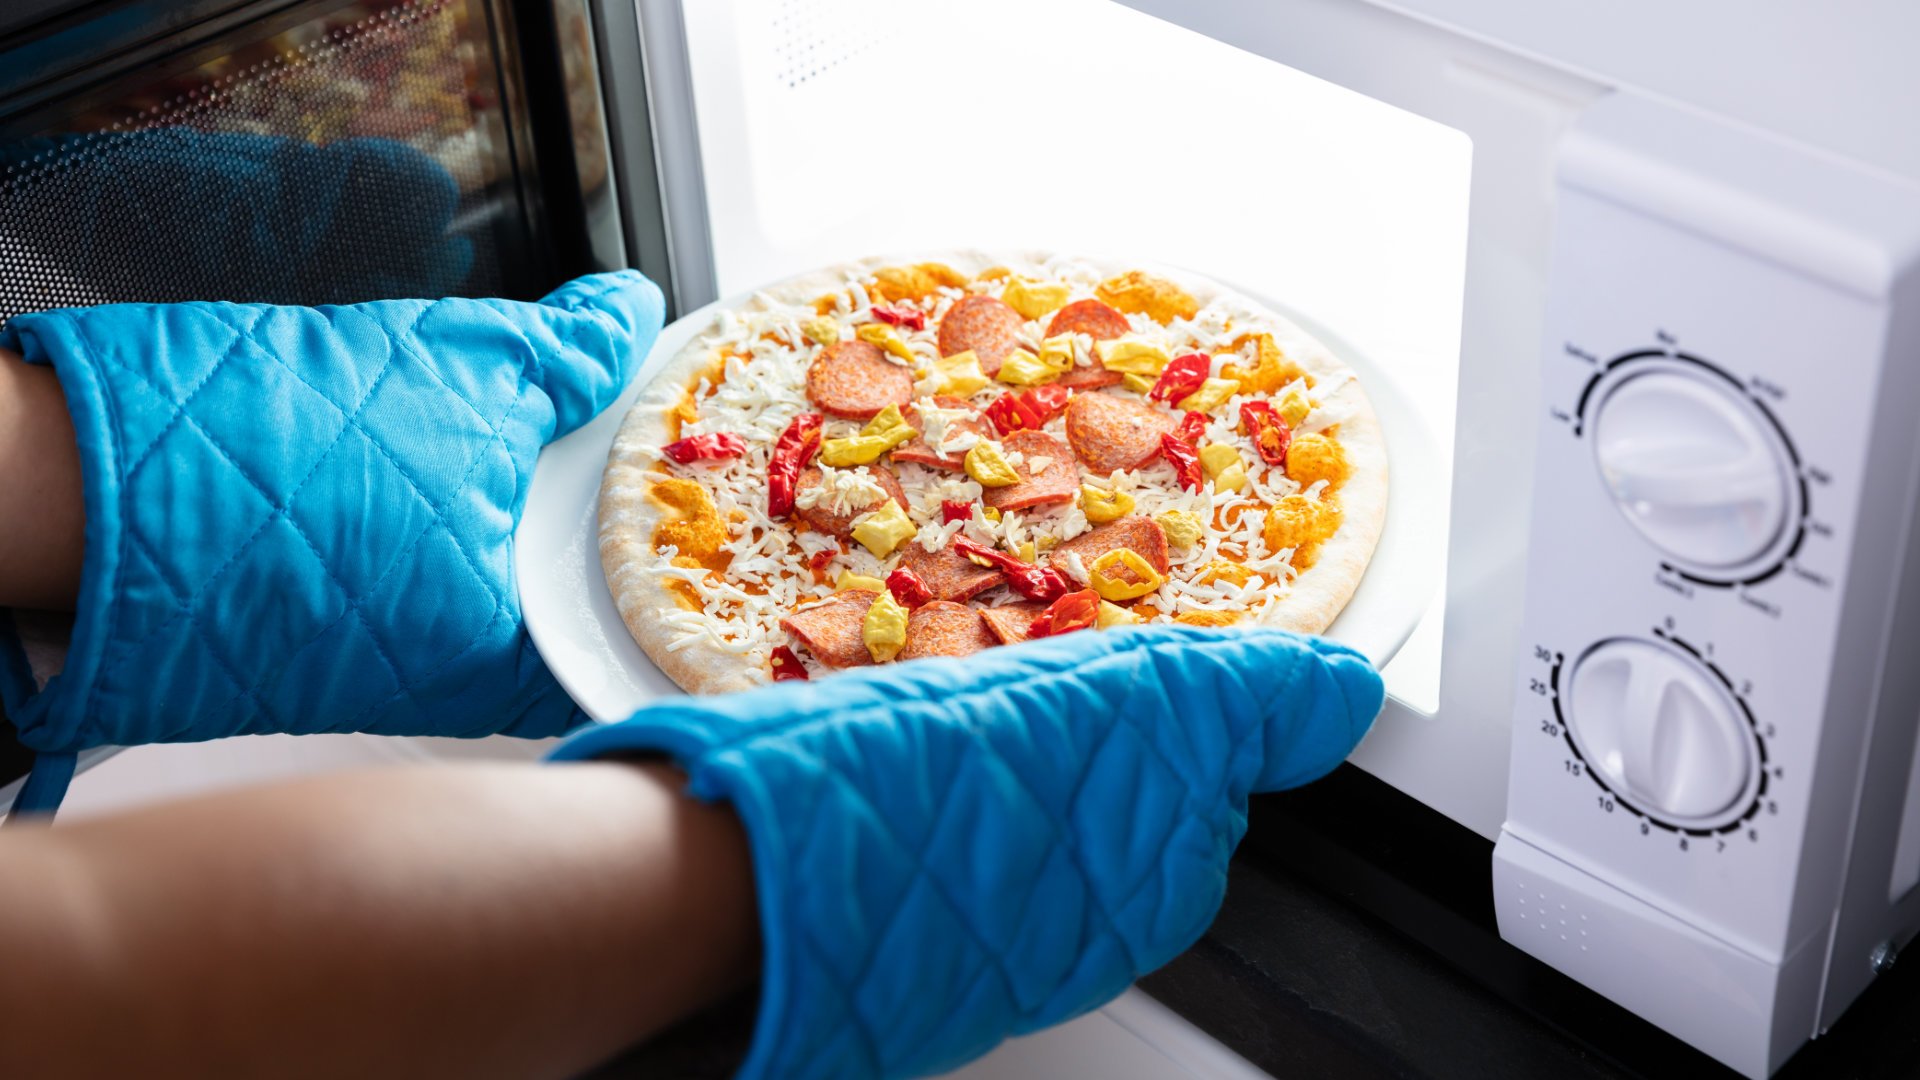 Как разогревать еду в микроволновке правильно (пицца, каша, курица, детское питание)?